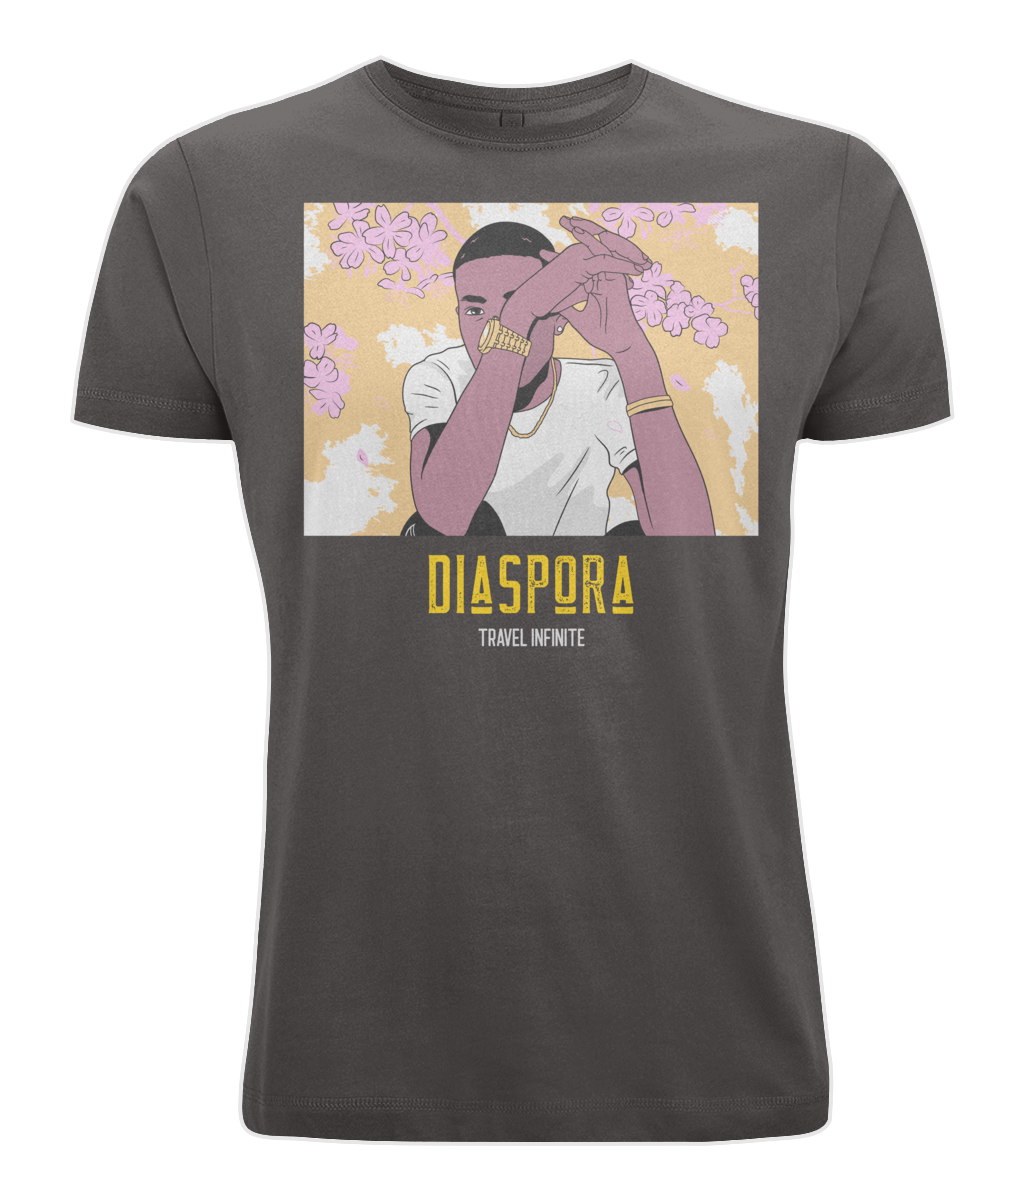 Diaspora T-Shirt - Carefree